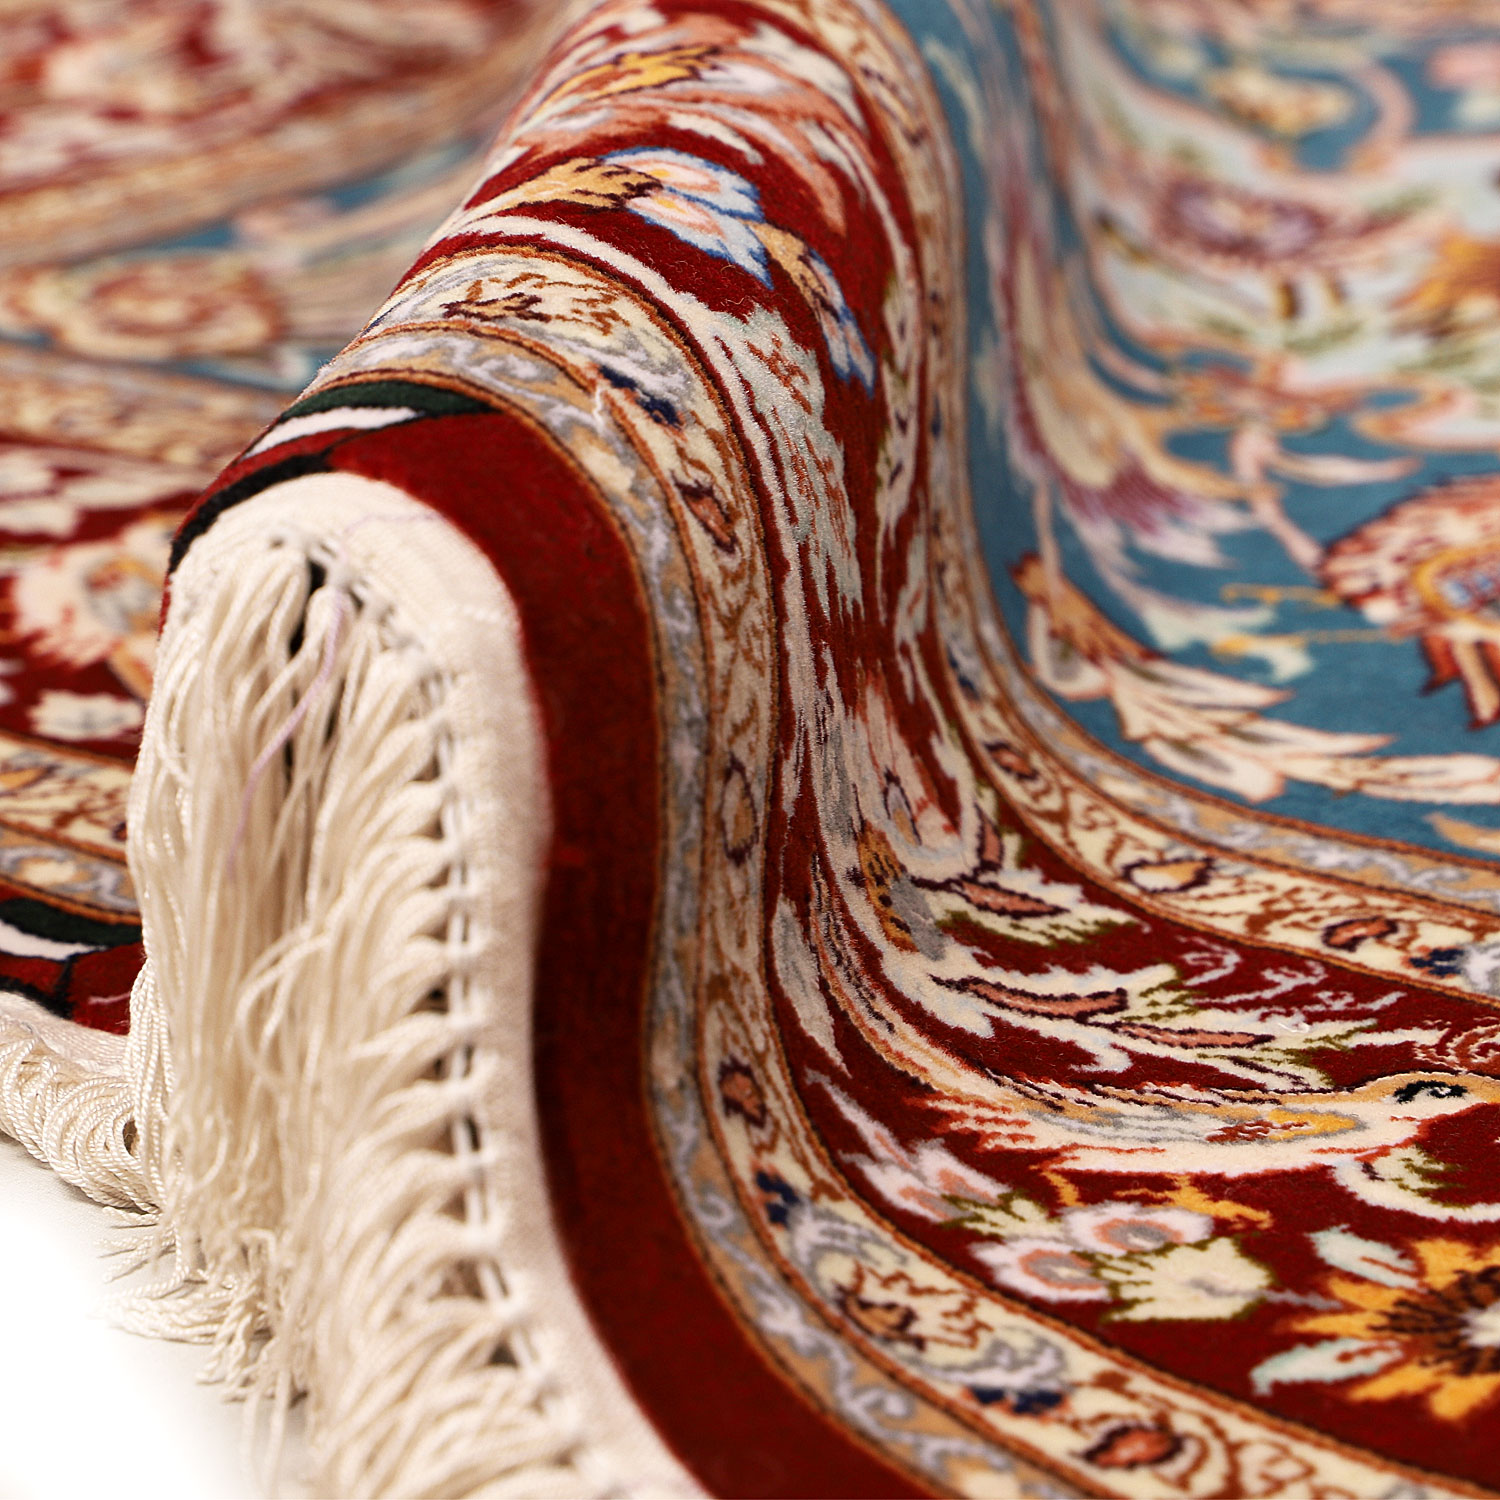 فرش دستبافت دو و نیم متری طرح گلدانی مدل اصفهان کد m140271 | گارانتی اصالت و سلامت فیزیکی کالا